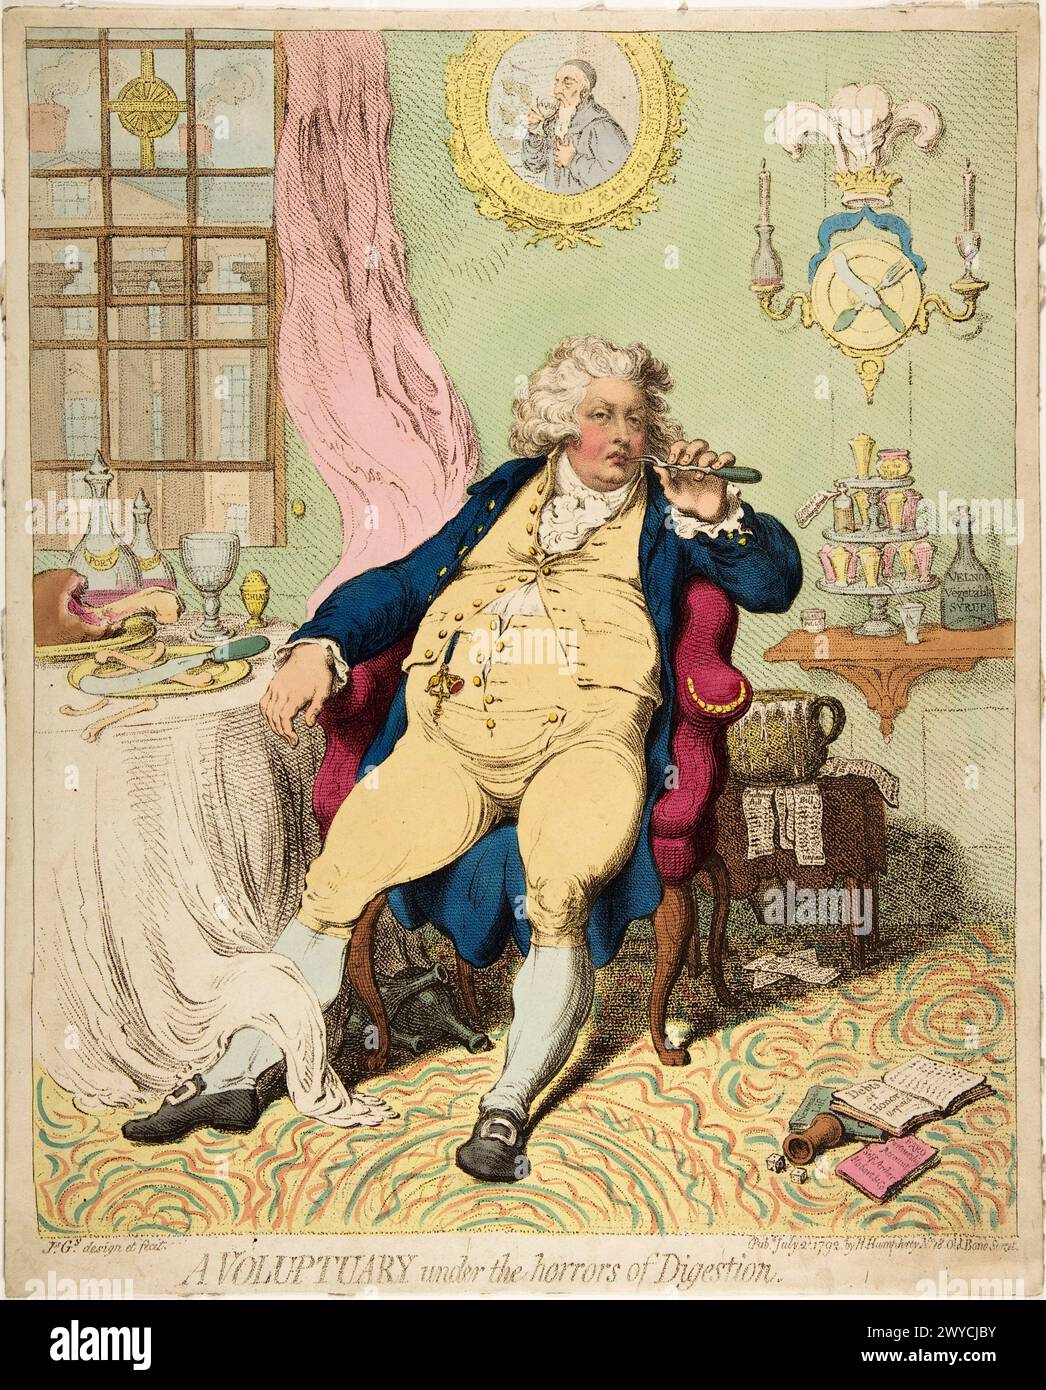 Ein Voluptuary unter den Schrecken der Verdauung. James Gillray, herausgegeben von Hannah Humphrey. 2. Juli 1792. Handgefärbtes Ätzen. Stockfoto